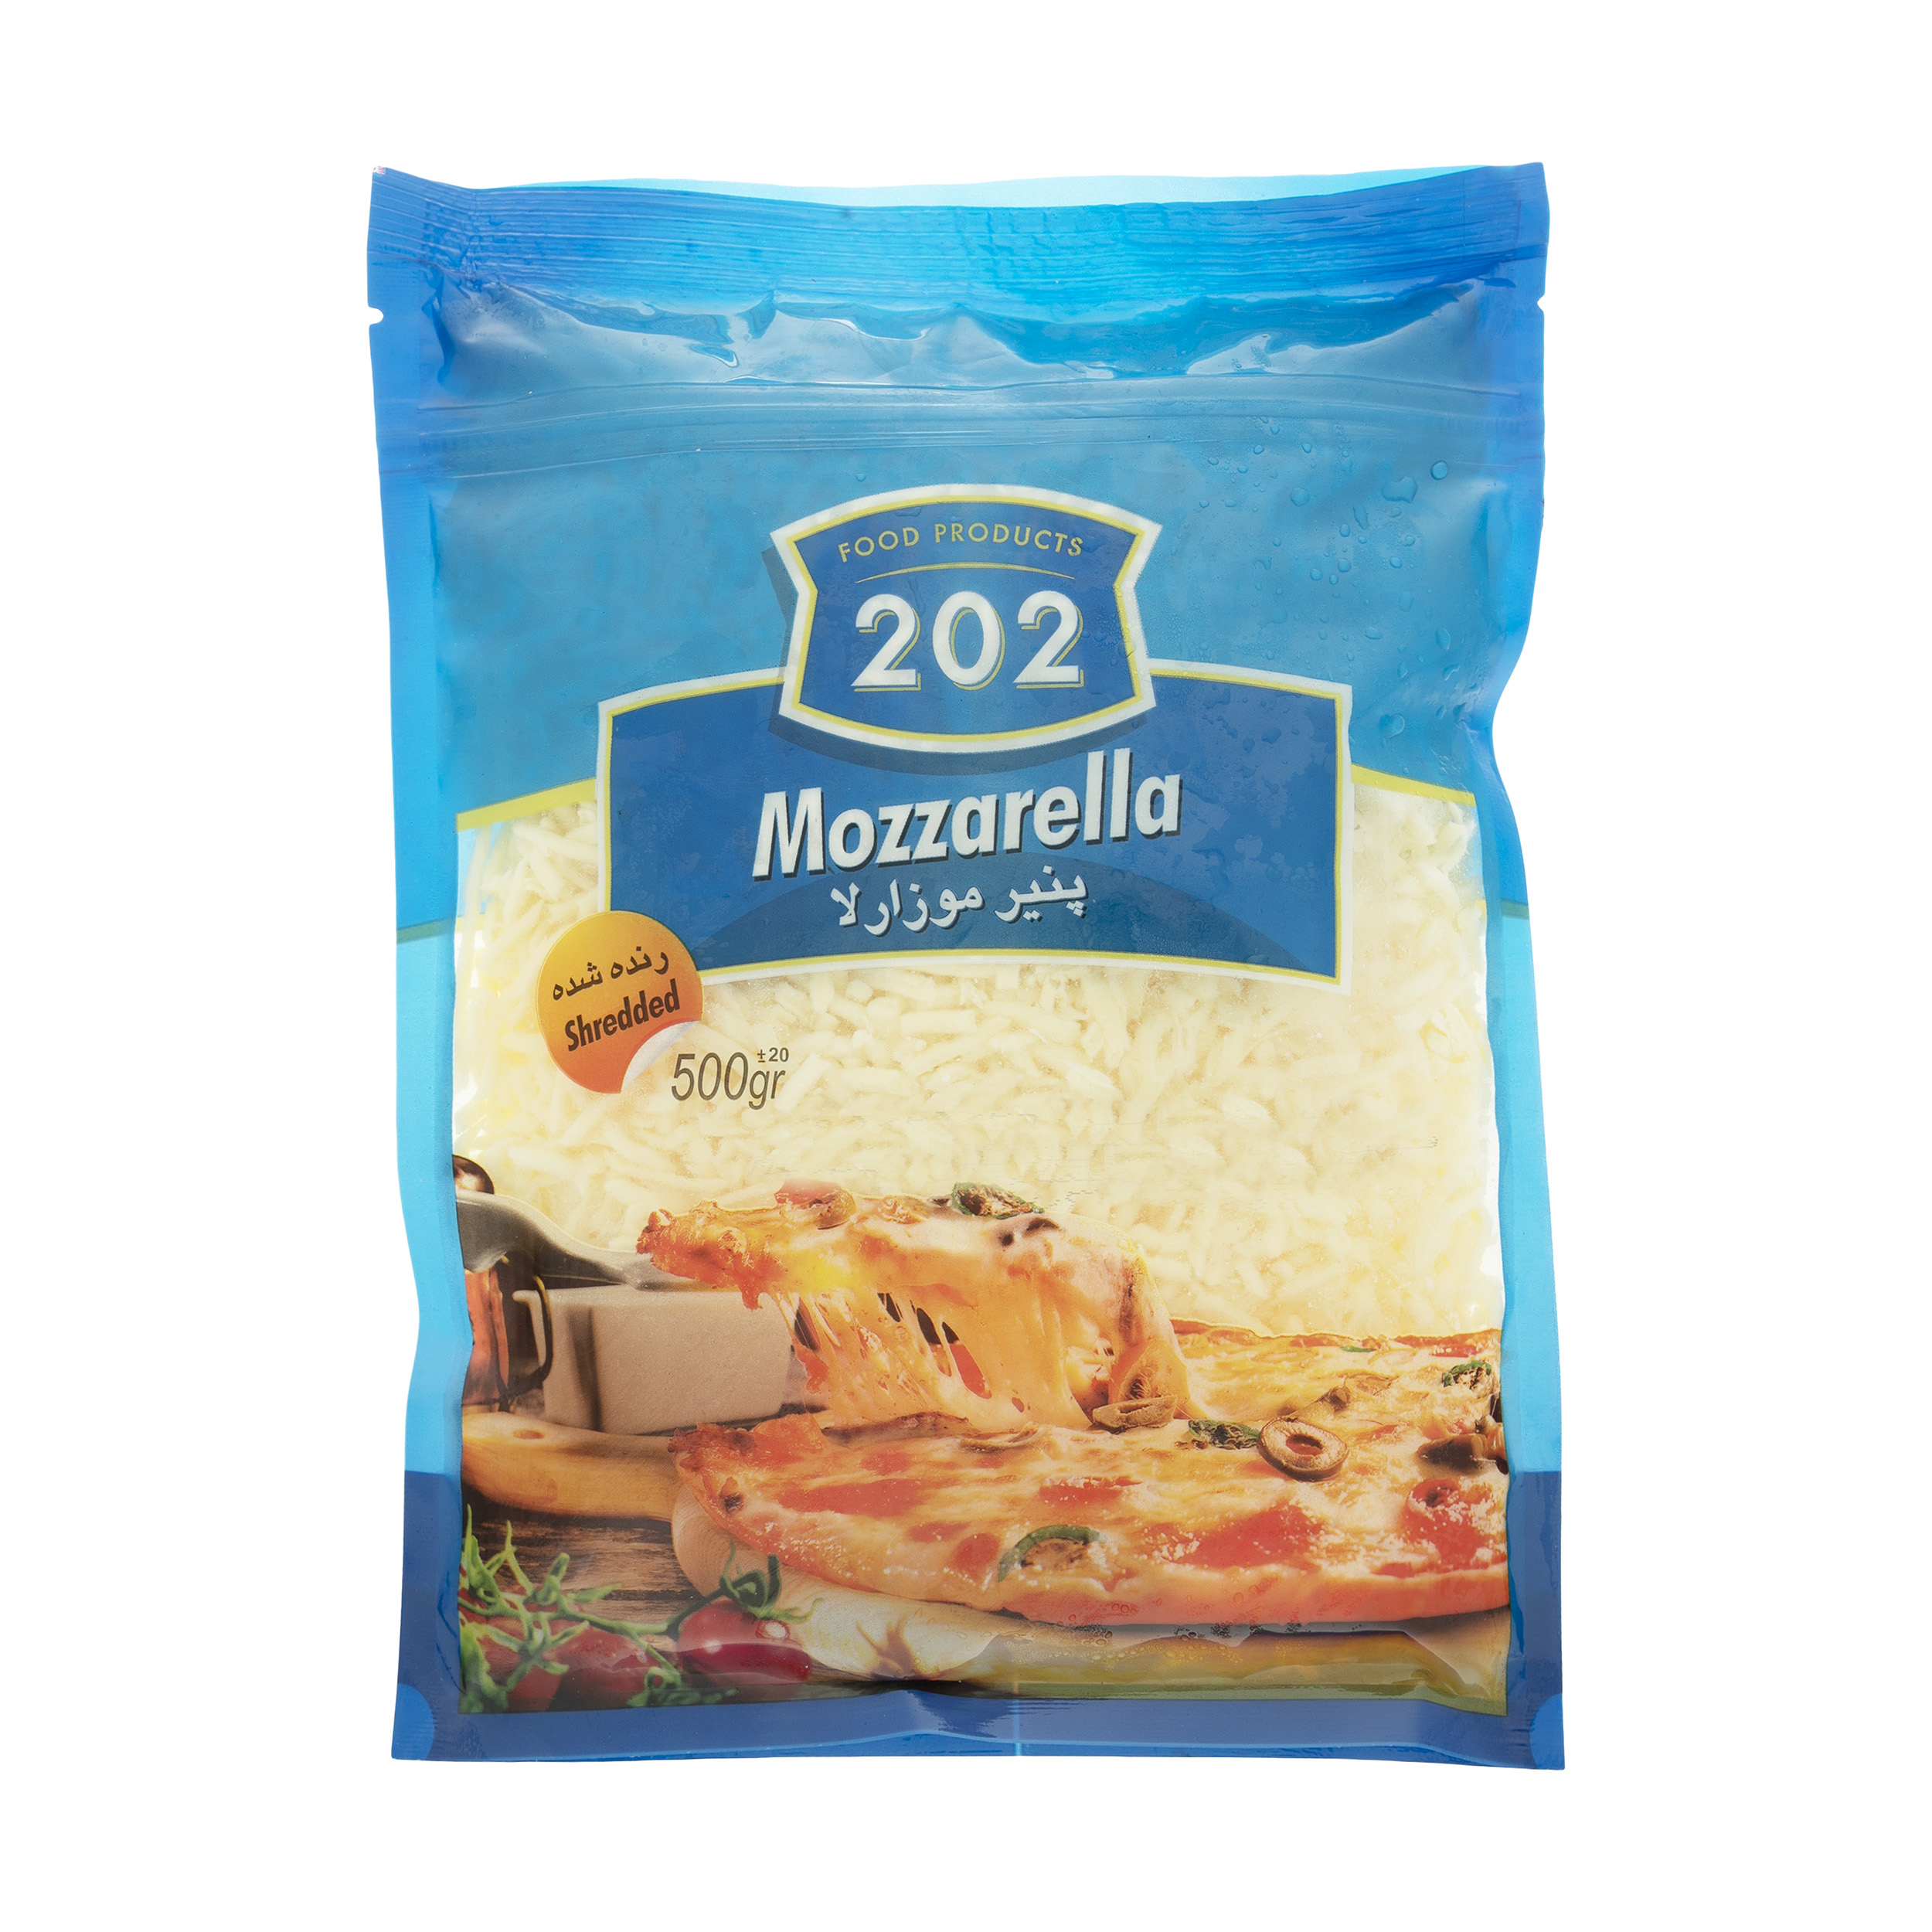 پنیر پیتزا موزارلا 202 وزن 500 گرم